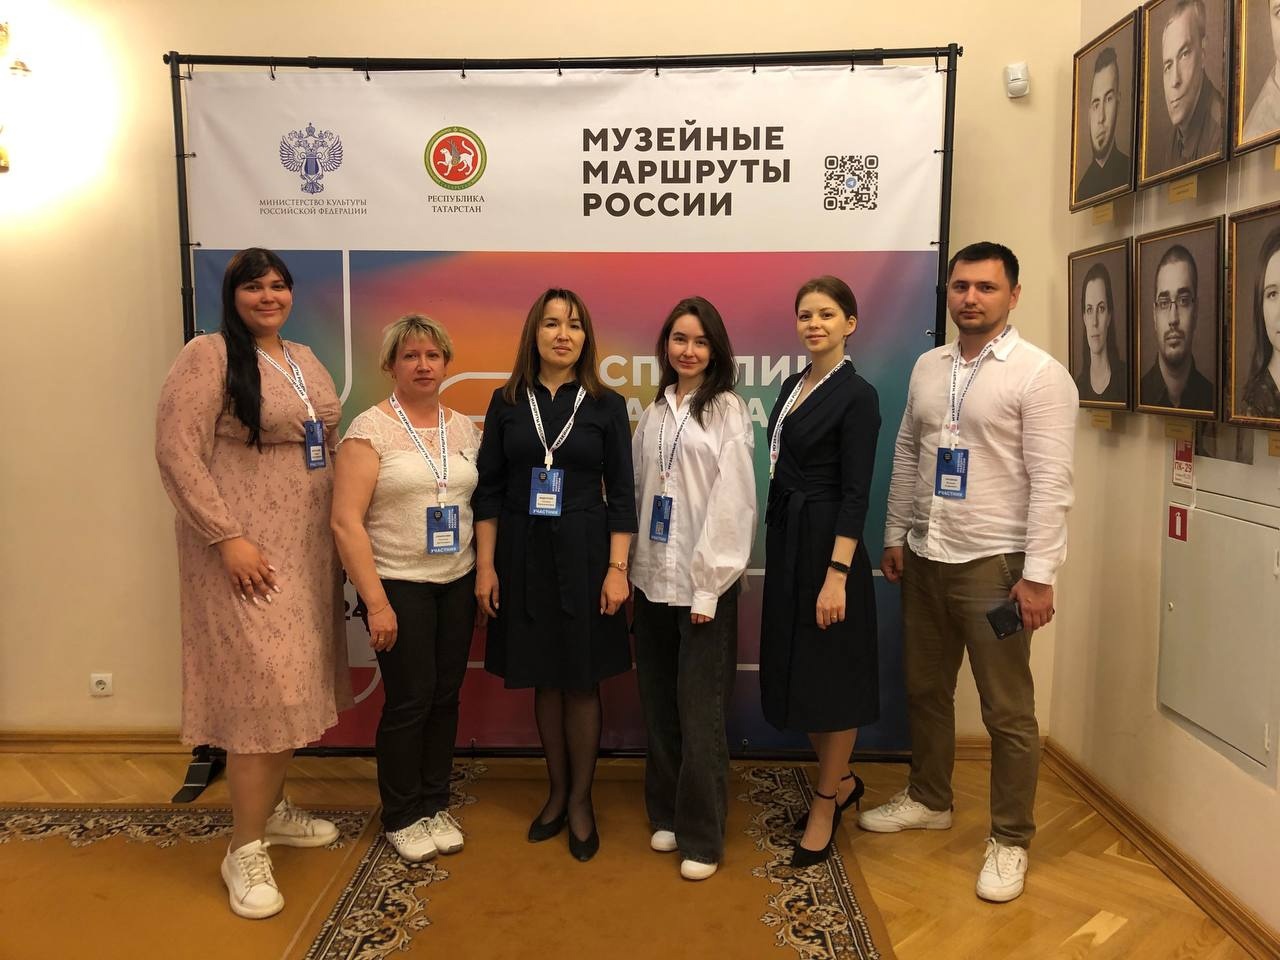 Сотрудники музея приняли участие в «Музейных маршрутах России» в Казани